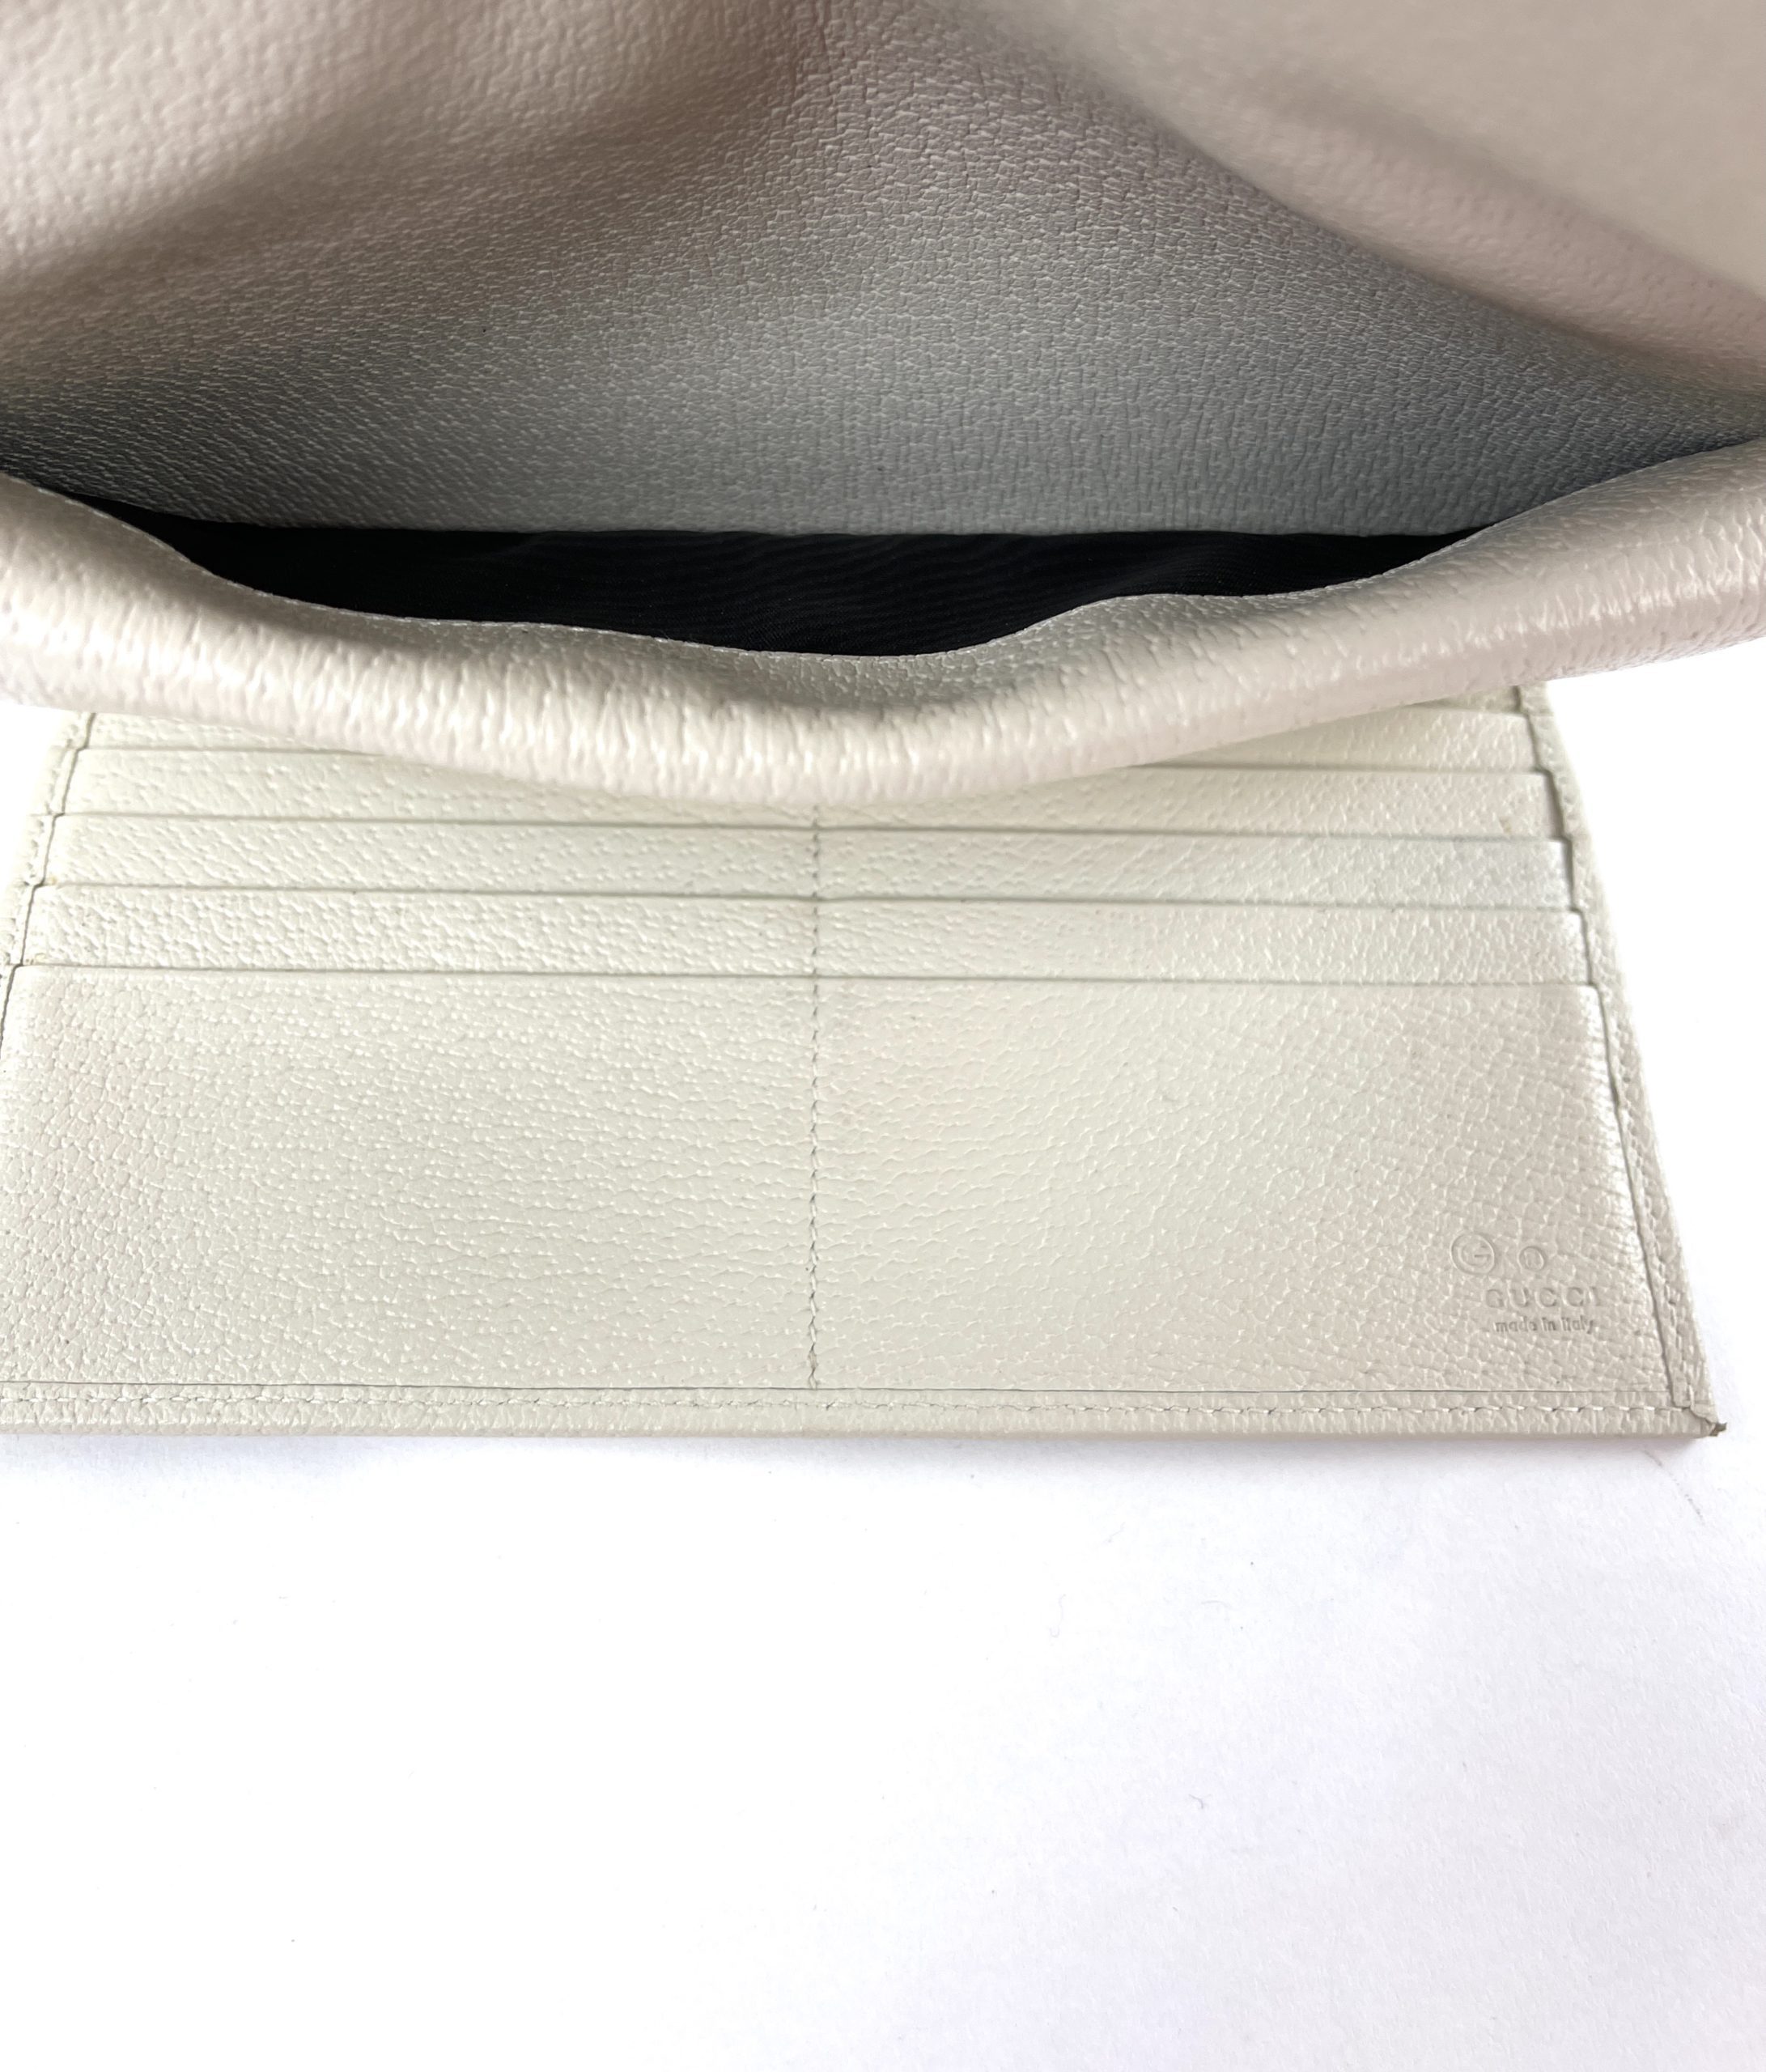 Gucci Sukey GG Guccissima Leather Off White Wallet